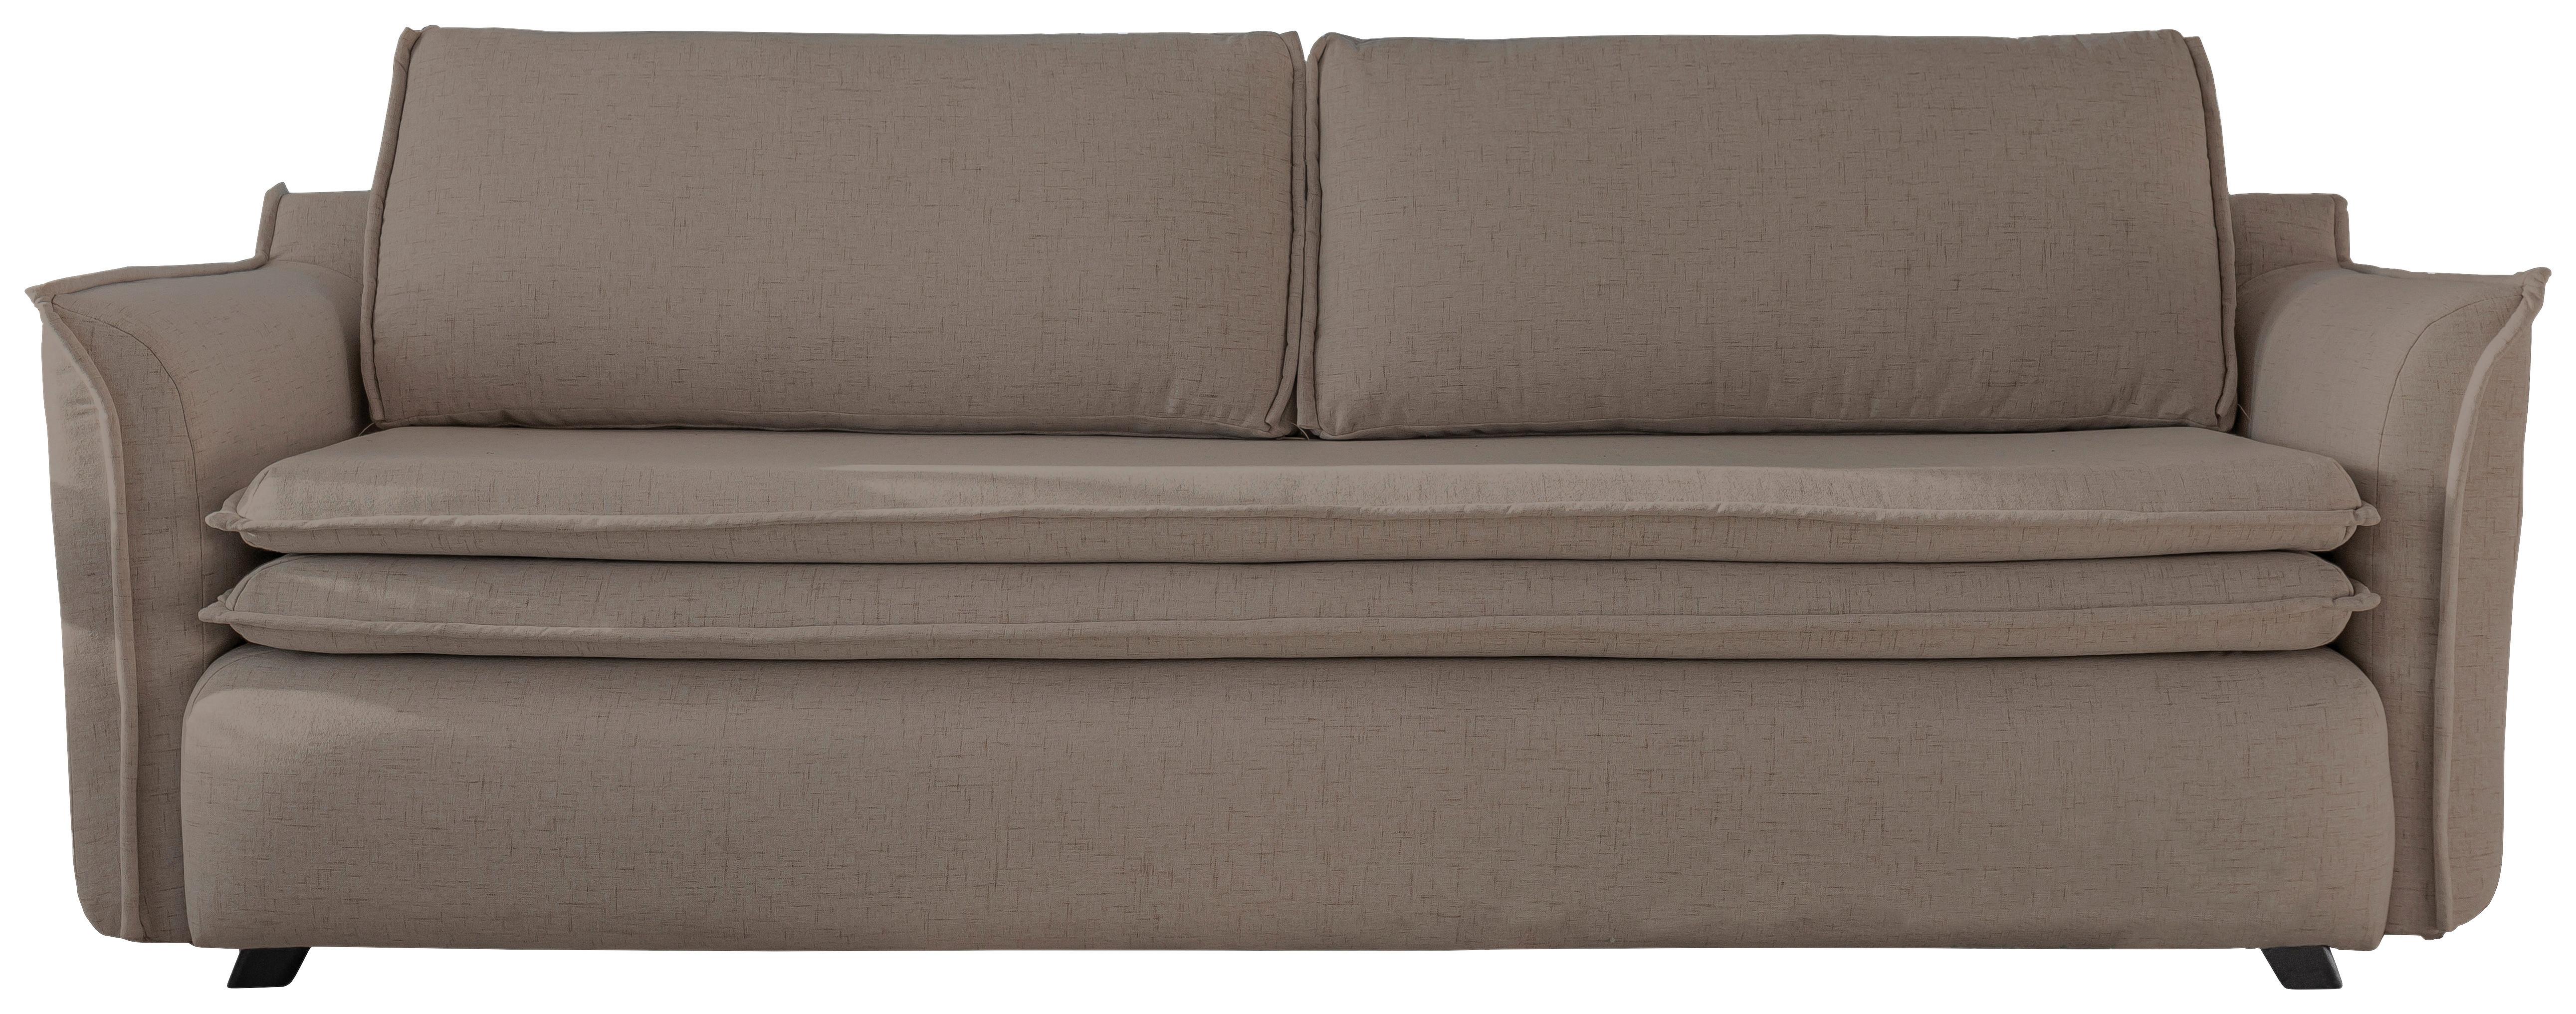 3-Sitzer-Sofa mit Schlaffunkt. und Bettkasten Charming Charlie - Hellbraun/Schwarz, Basics, Textil (225/85/90cm) - MID.YOU